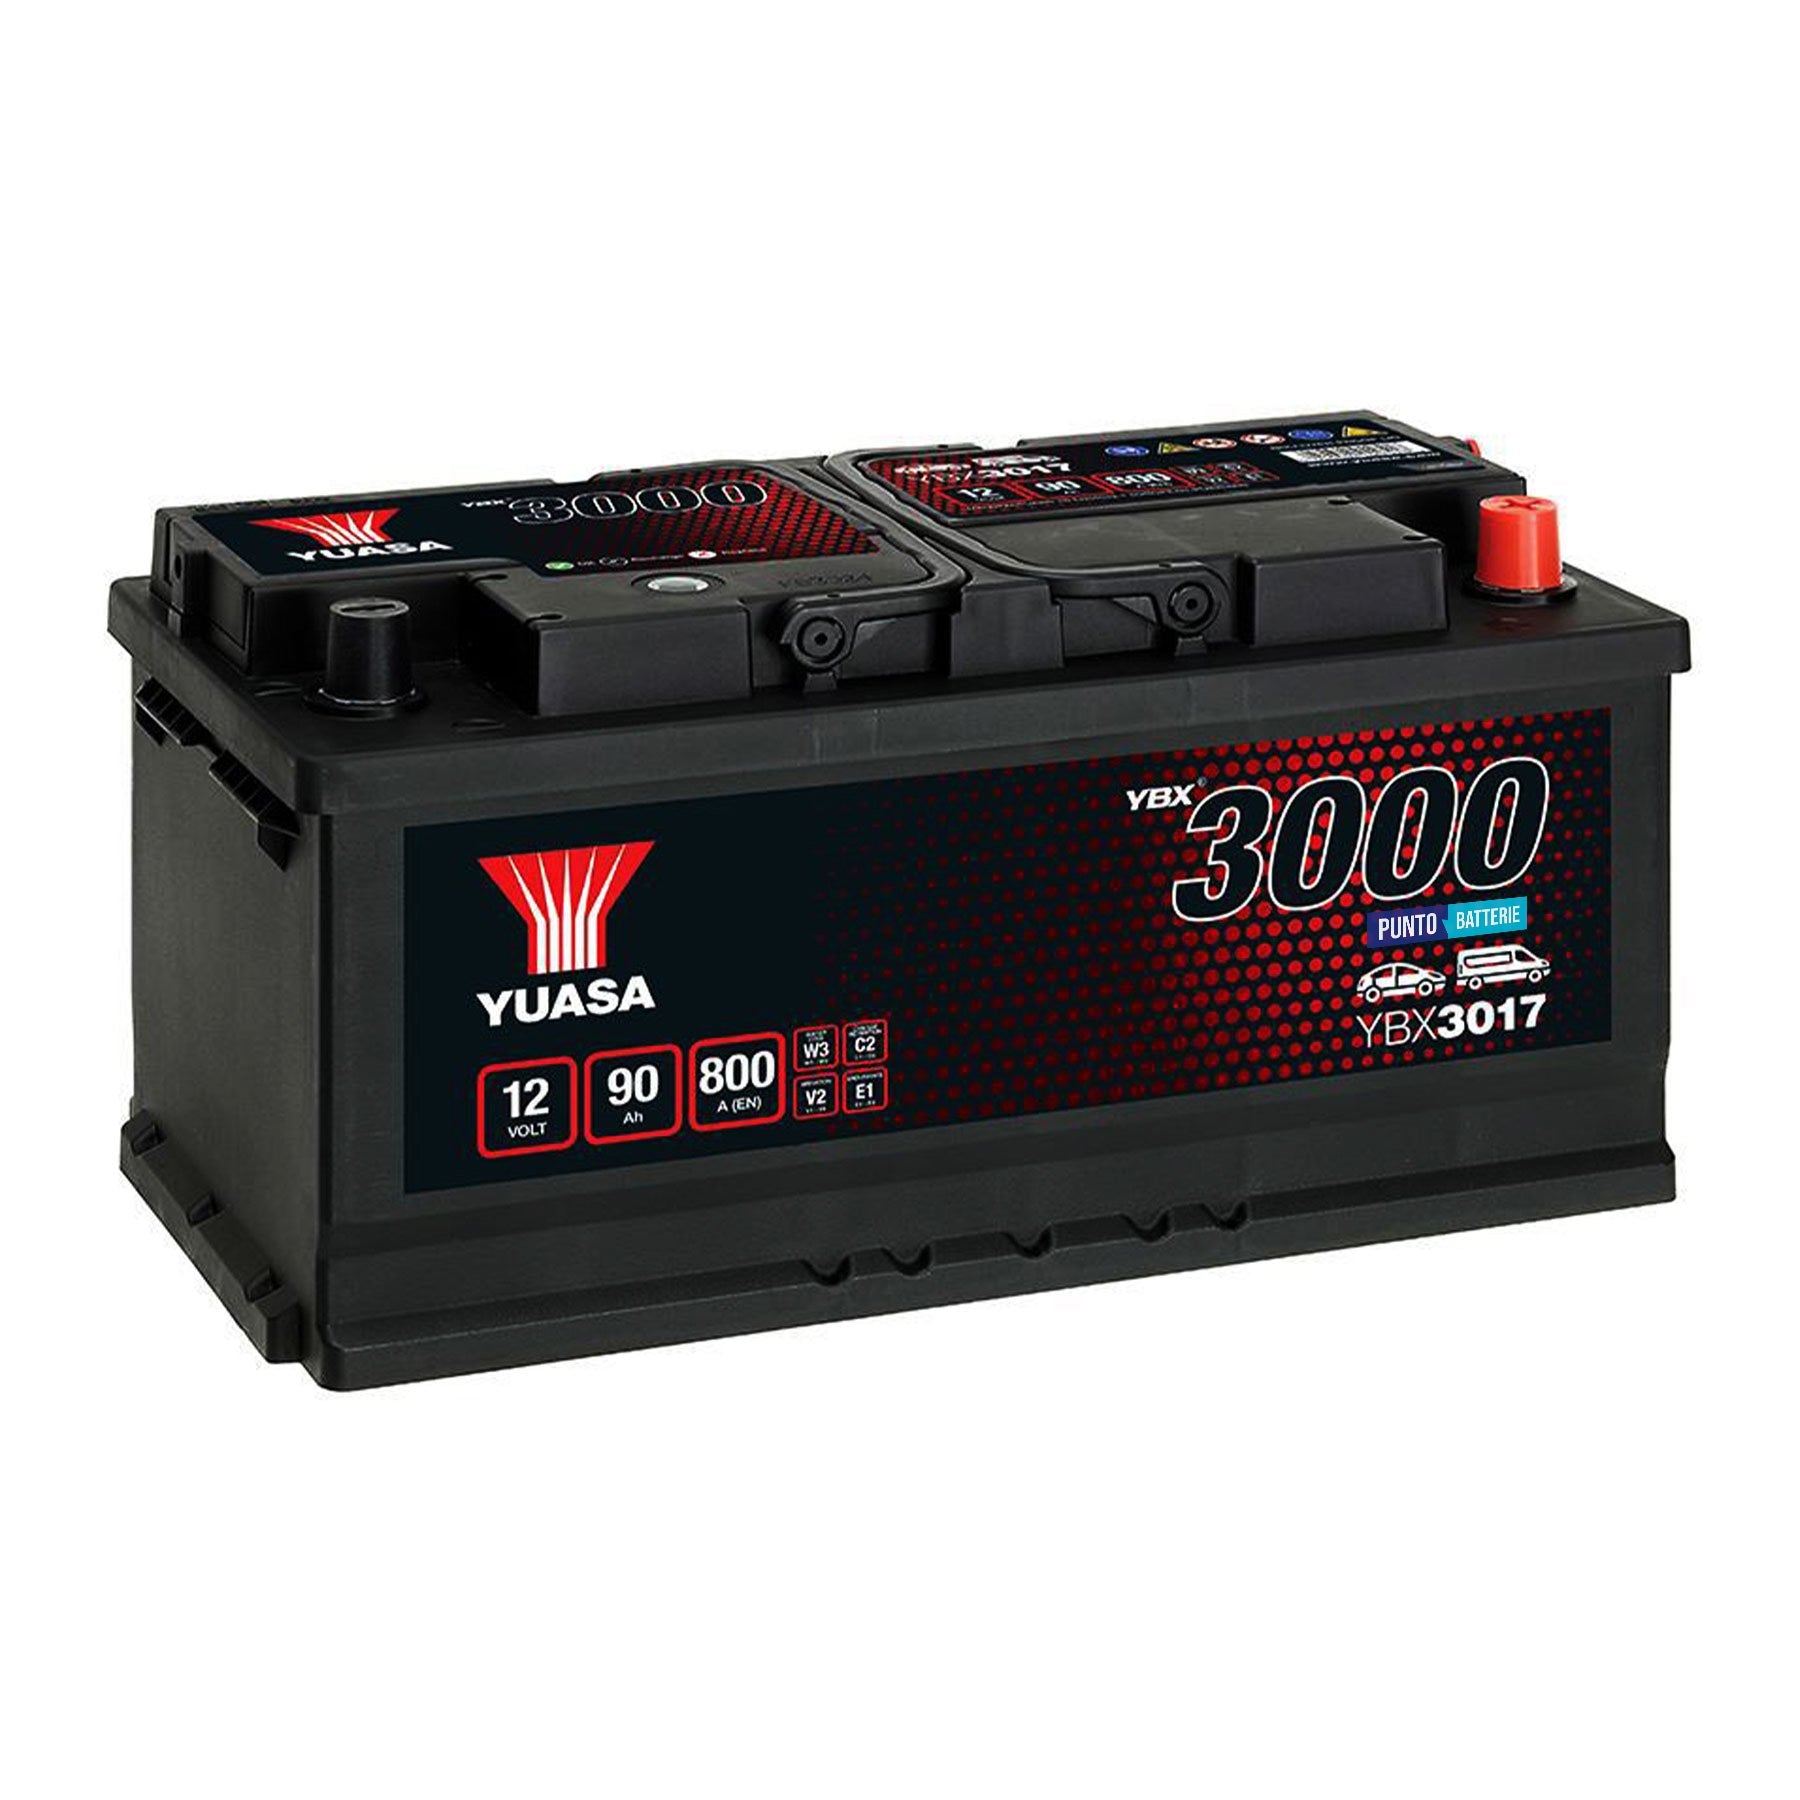 Batteria originale Yuasa YBX3000 YBX3017, dimensioni 353 x 175 x 175, polo positivo a destra, 12 volt, 90 amperora, 800 ampere. Batteria per auto e veicoli leggeri.